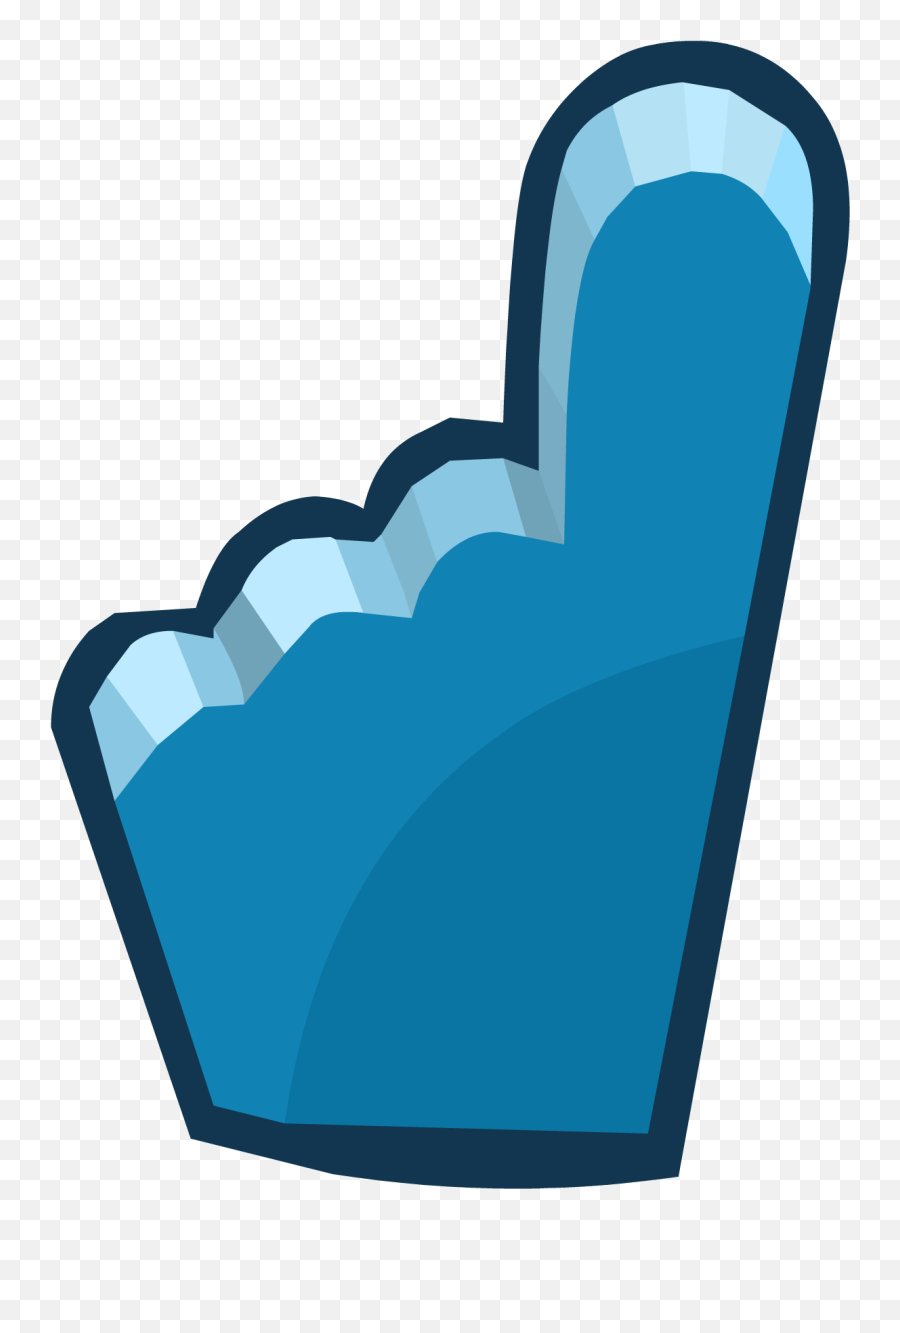 Penguin Cup 2014 Emoticons Blue Foam - Emoticon Emoji,Solo Cup Emoticon